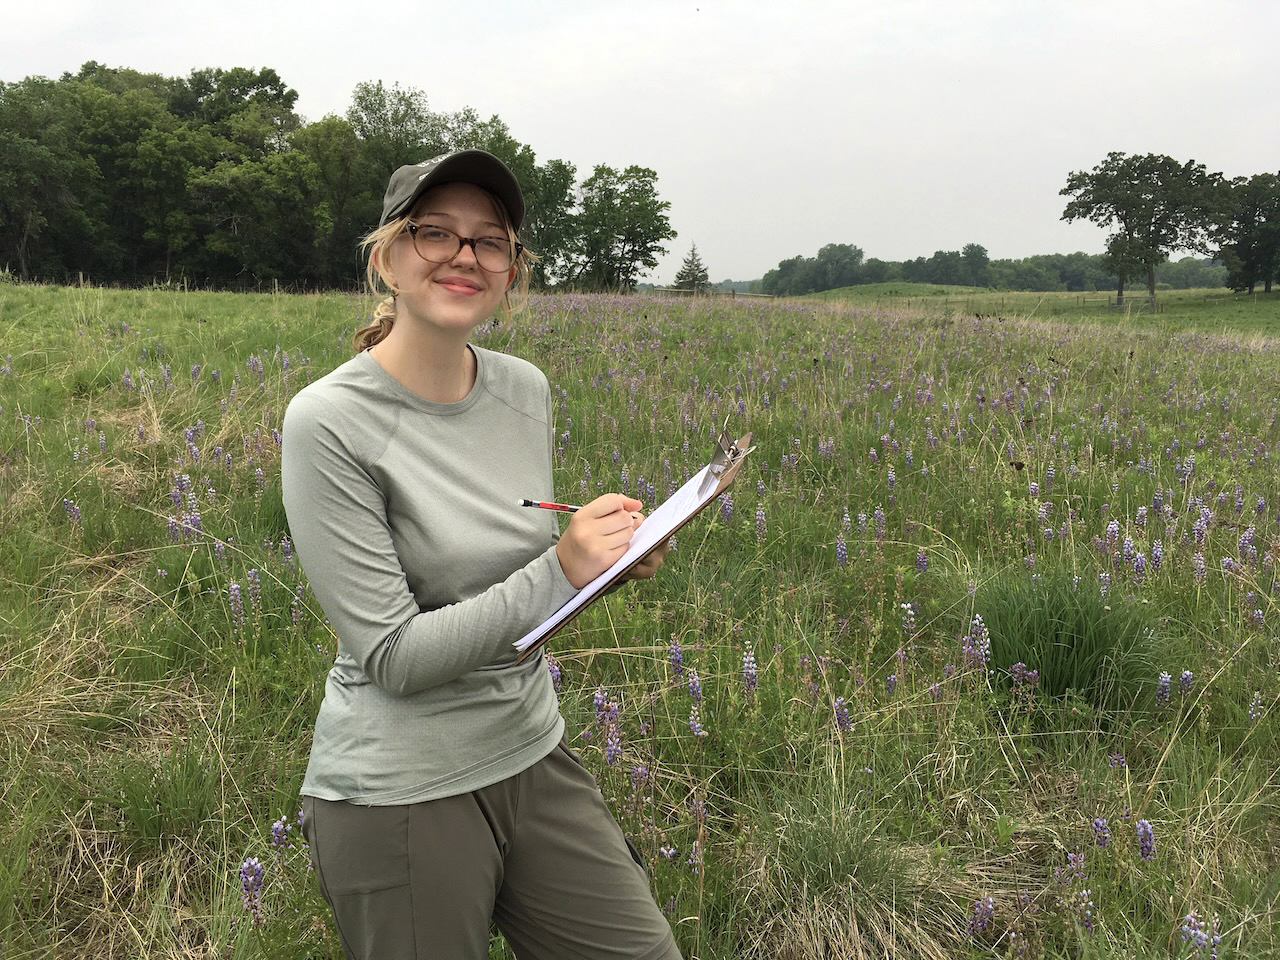 Annika Brelsford with a clipboard in the prairie